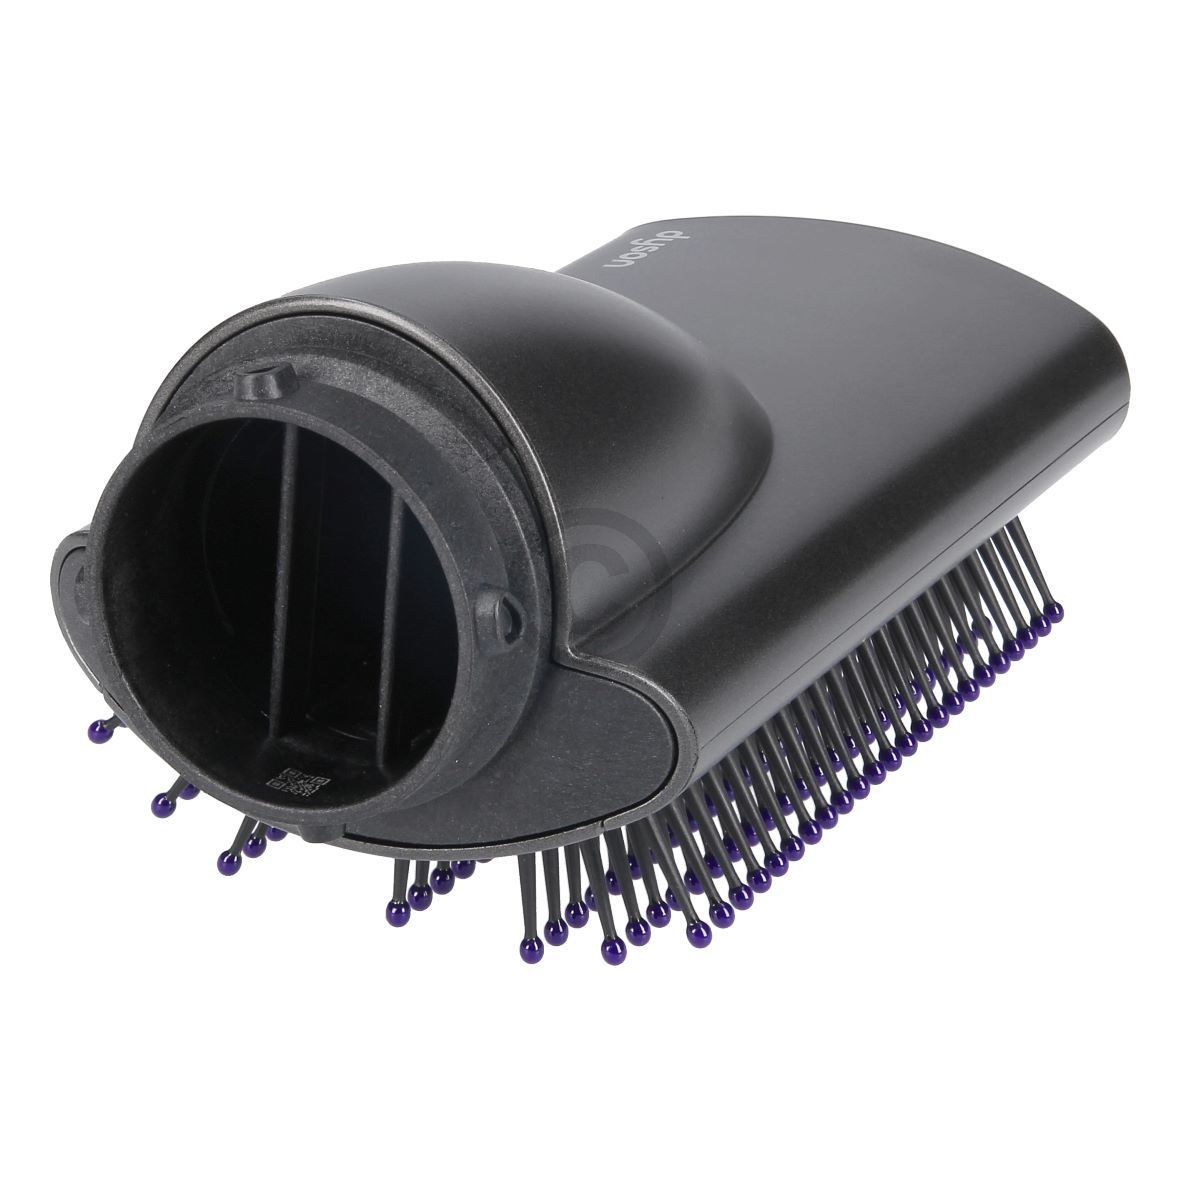 Glättbürste weiche Borsten dyson 969484-01 für Airwrap™ Haarstyler